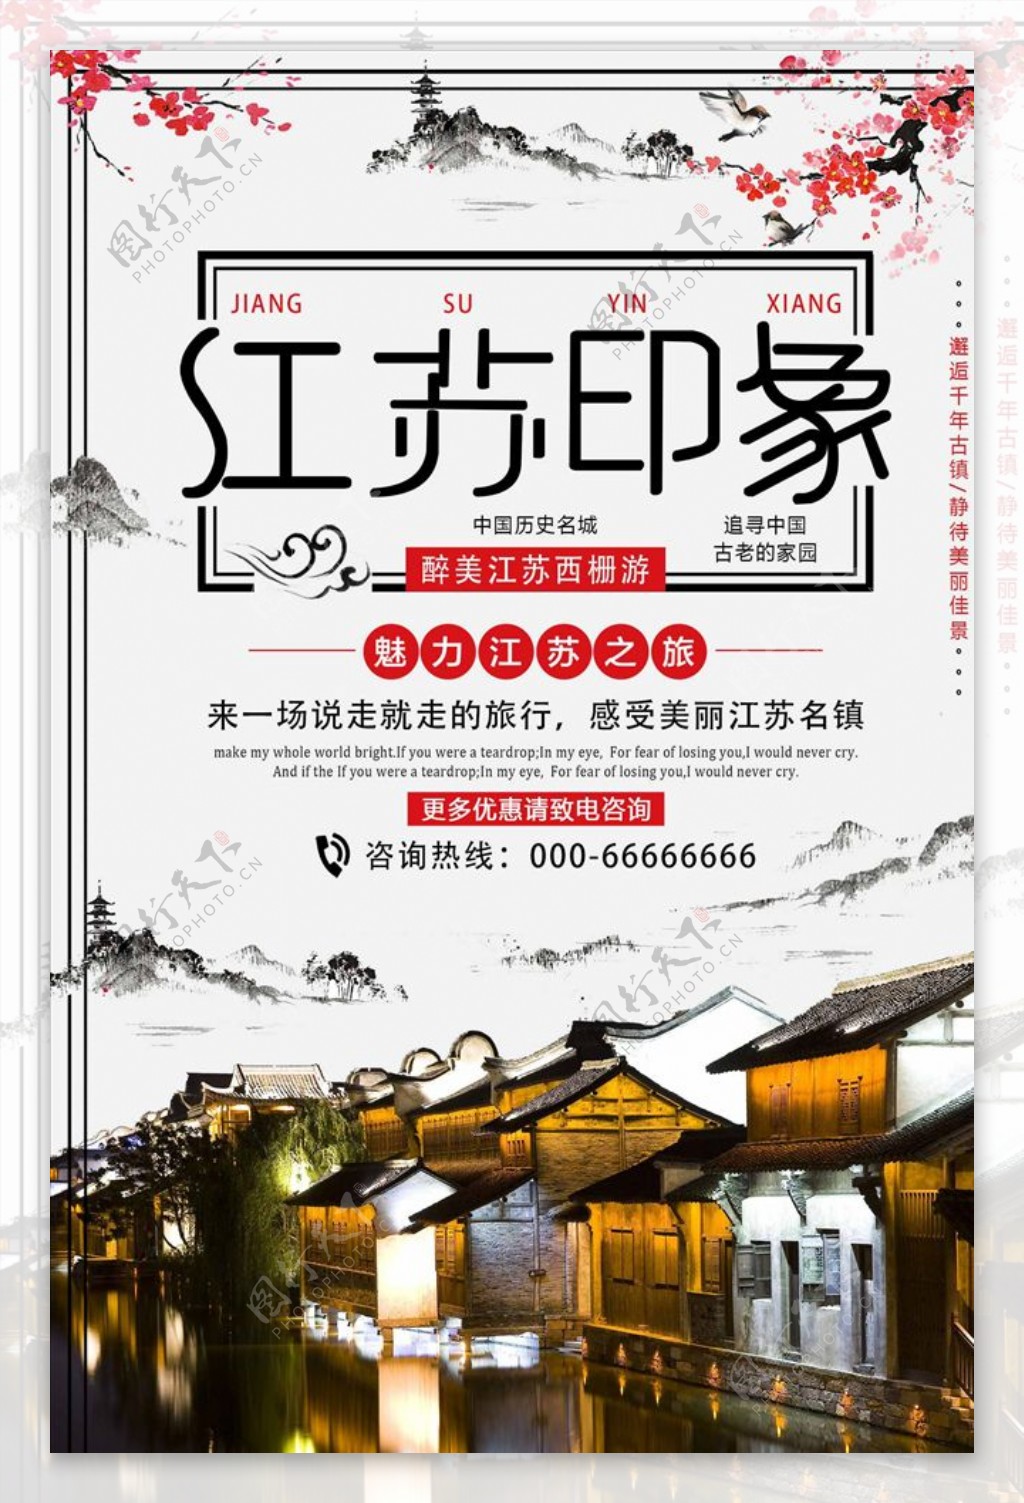 中国风江苏印象旅游宣传海报